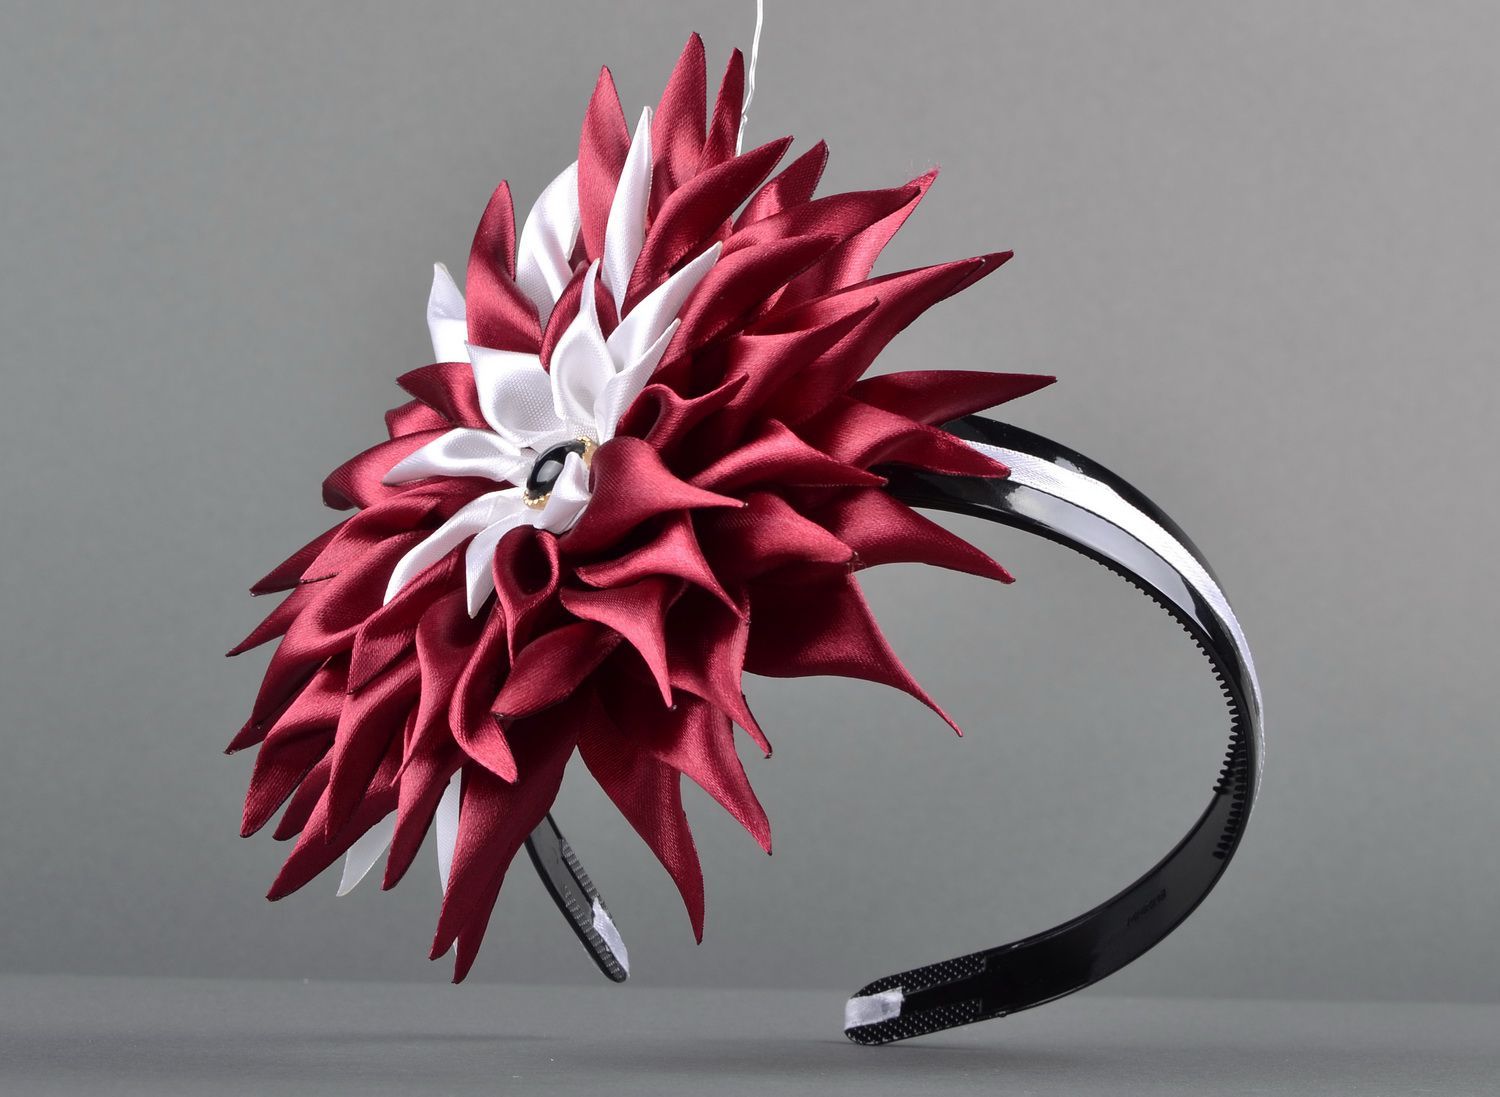 Aro de cabelo, coroa de flores na cabeça com uma flor de cetim  foto 2